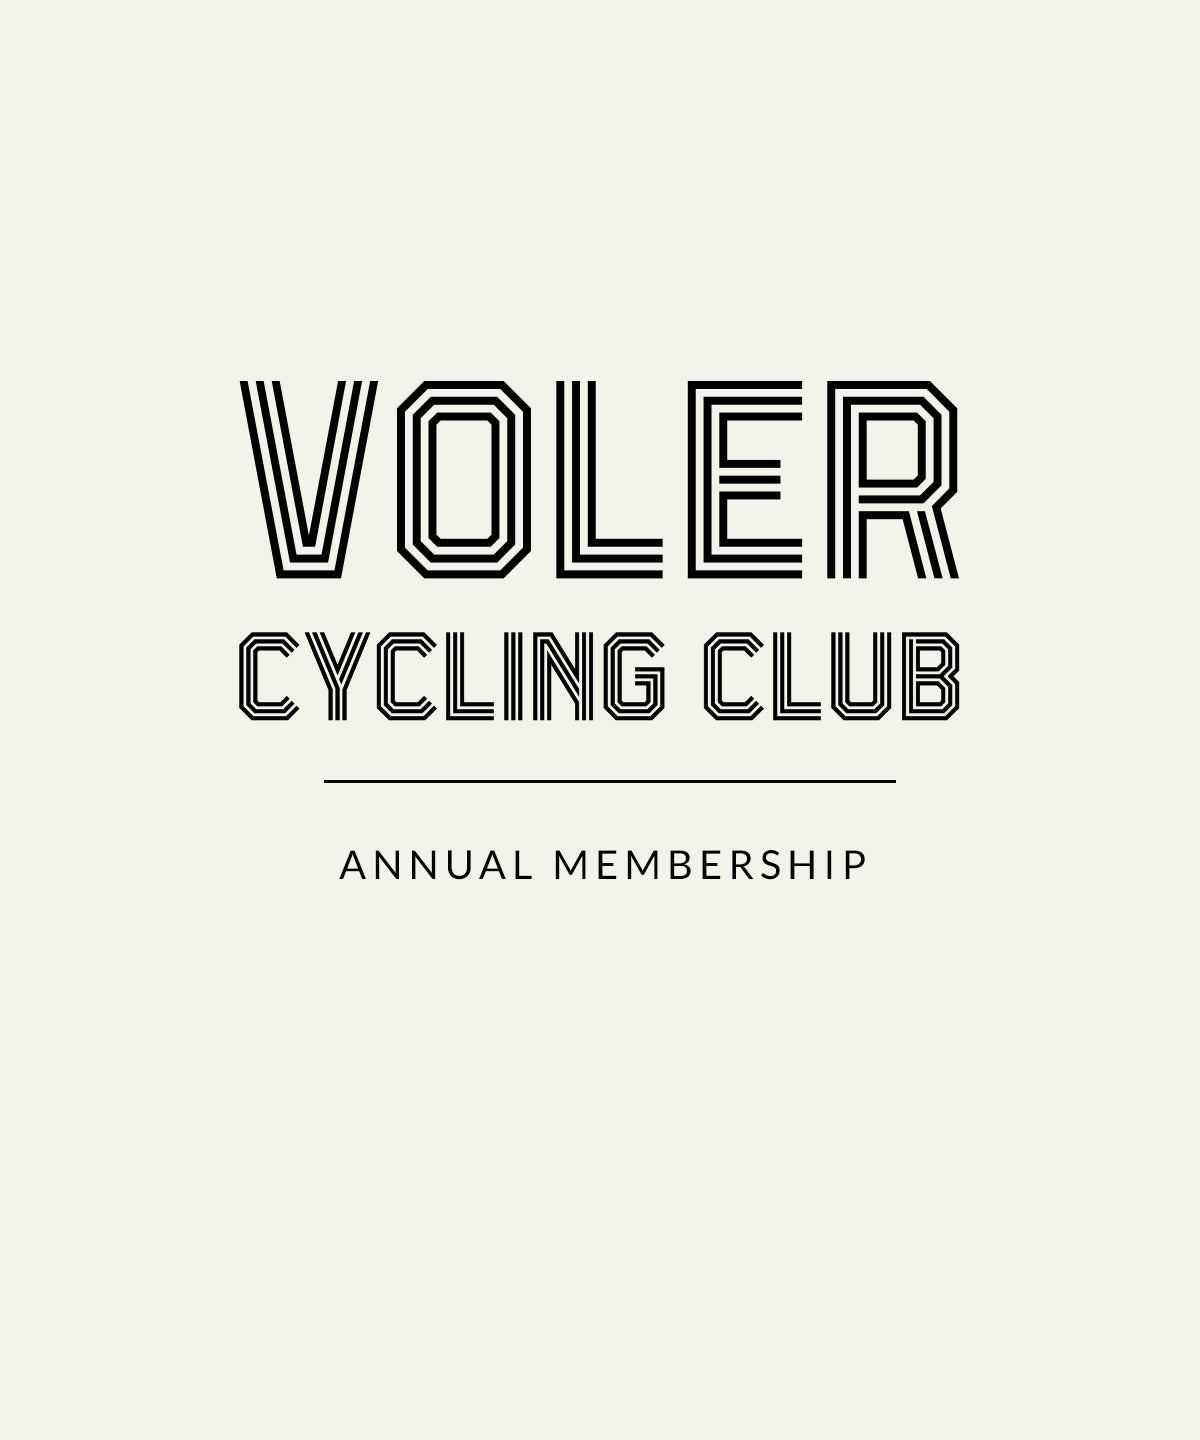 VOLER CYCLING CLUB ANNUAL MEMBERSHIP